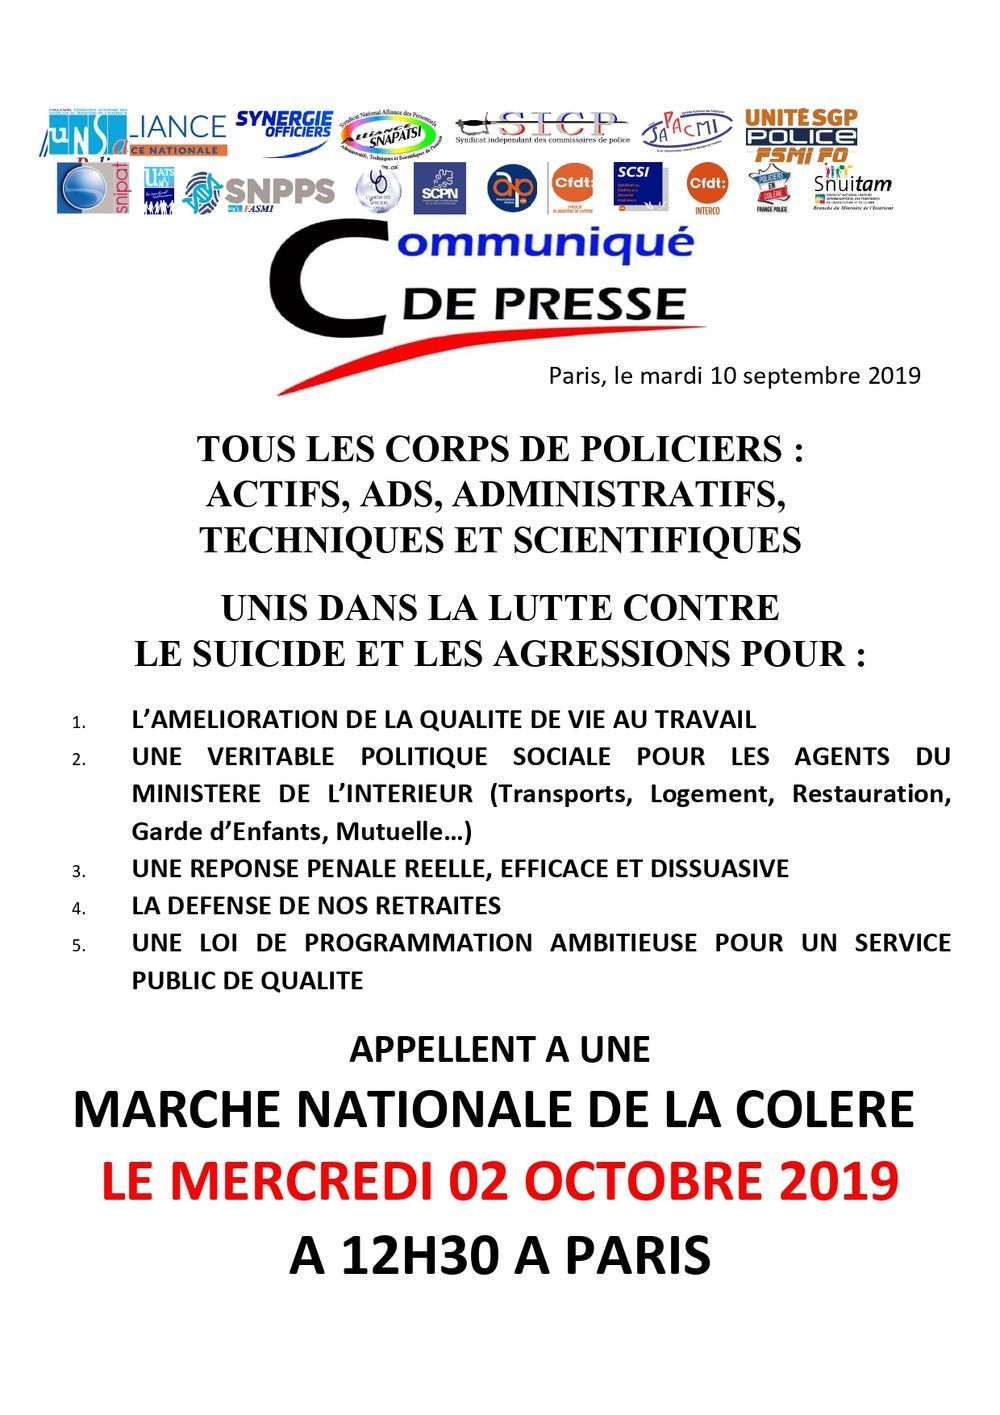 MARCHE NATIONALE DE LA COLÈRE LE 02 OCTOBRE 2019